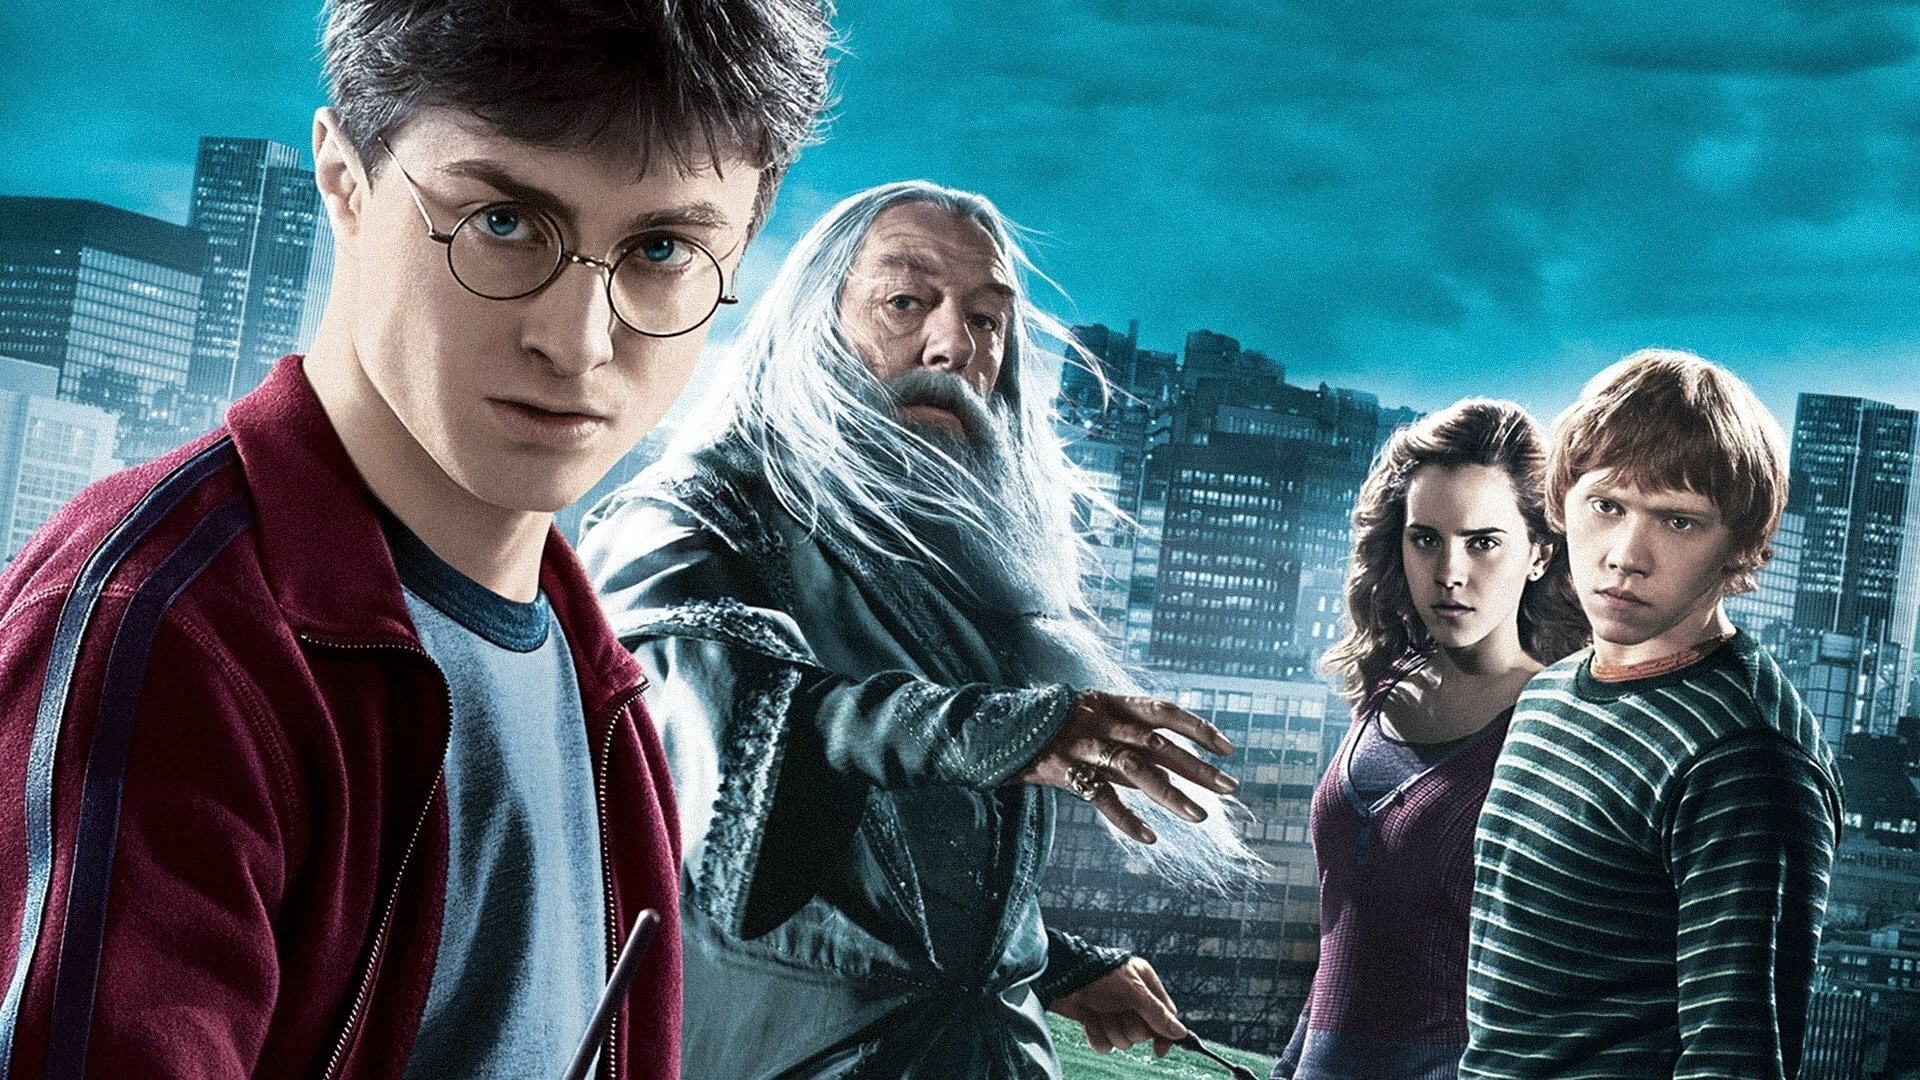 Image du film Harry Potter et le Prince de sang-mêlé p68o5cxq9i5au7qcly4xkcxhy3cjpg